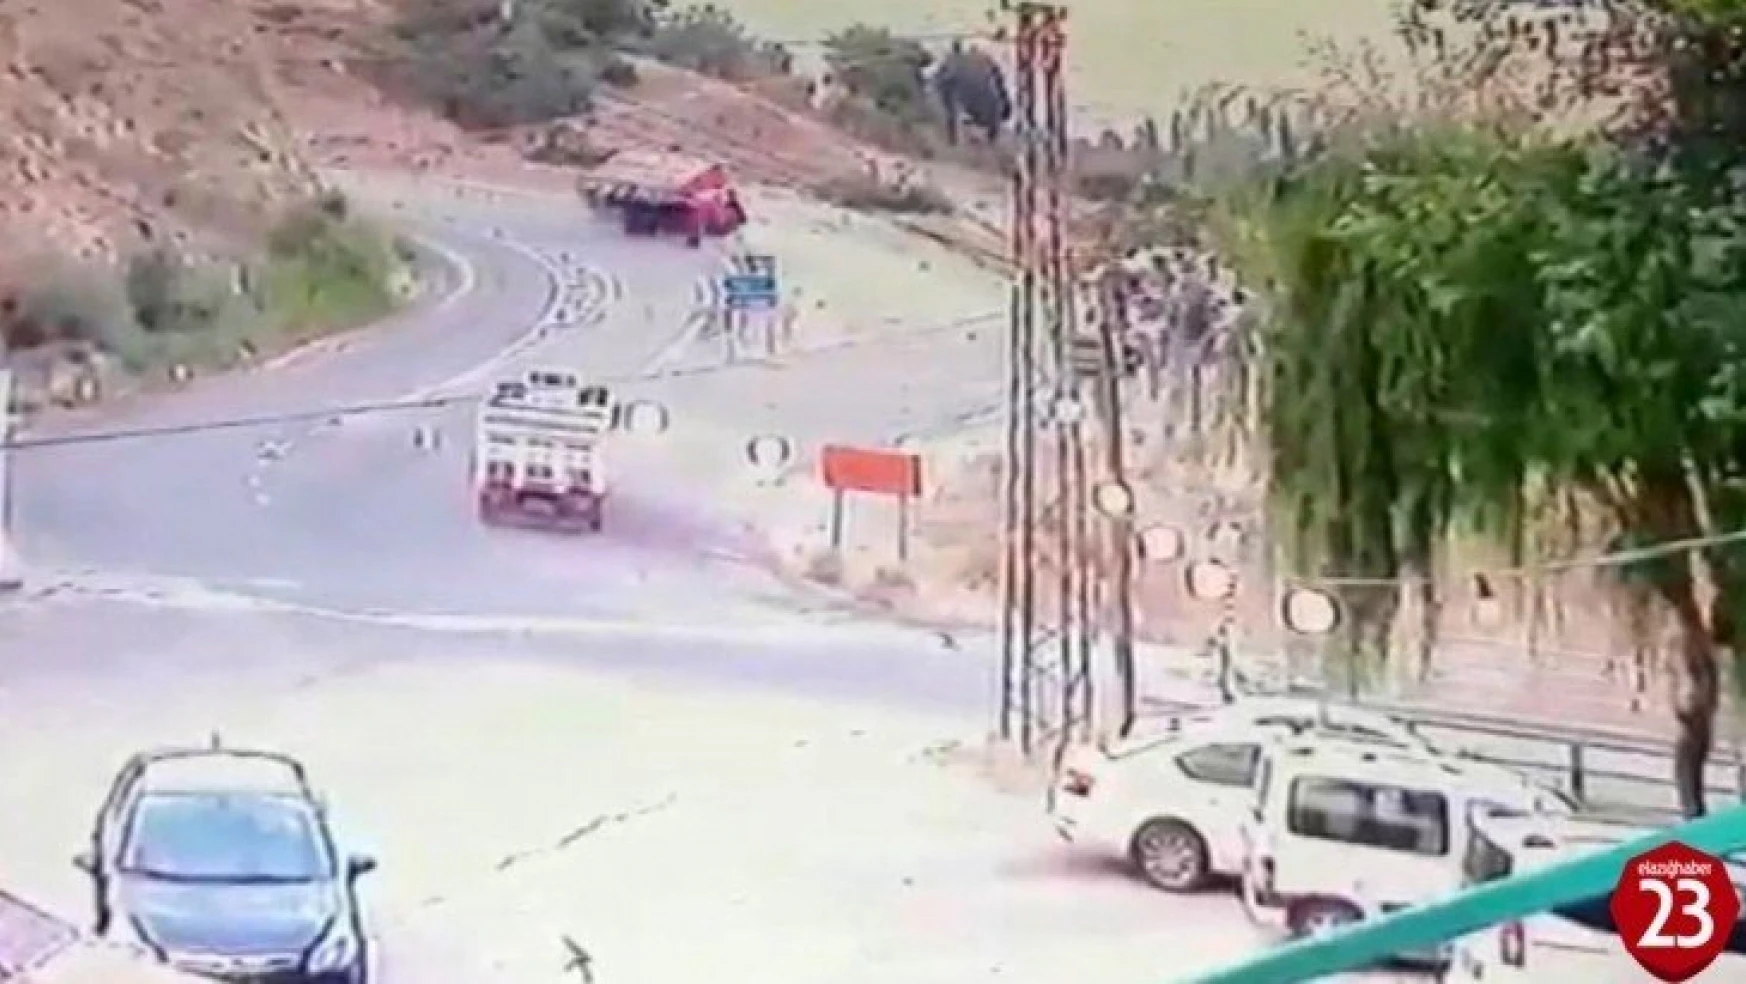 Elazığ'da kamyonun devrilme anı kameralara yansıdı